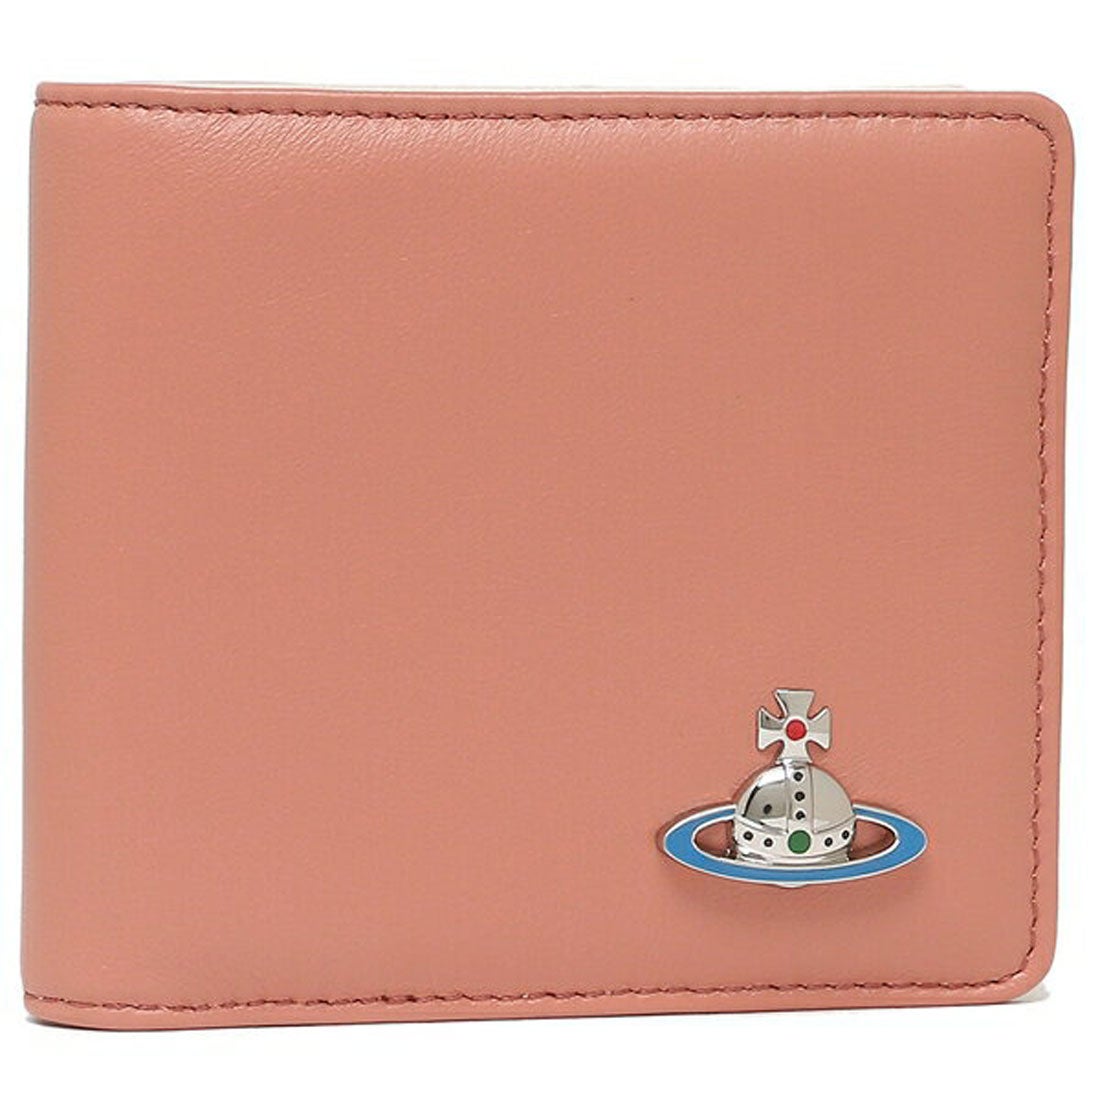 二つ折り財布 Vivienne Westwood 51010009 ピンク